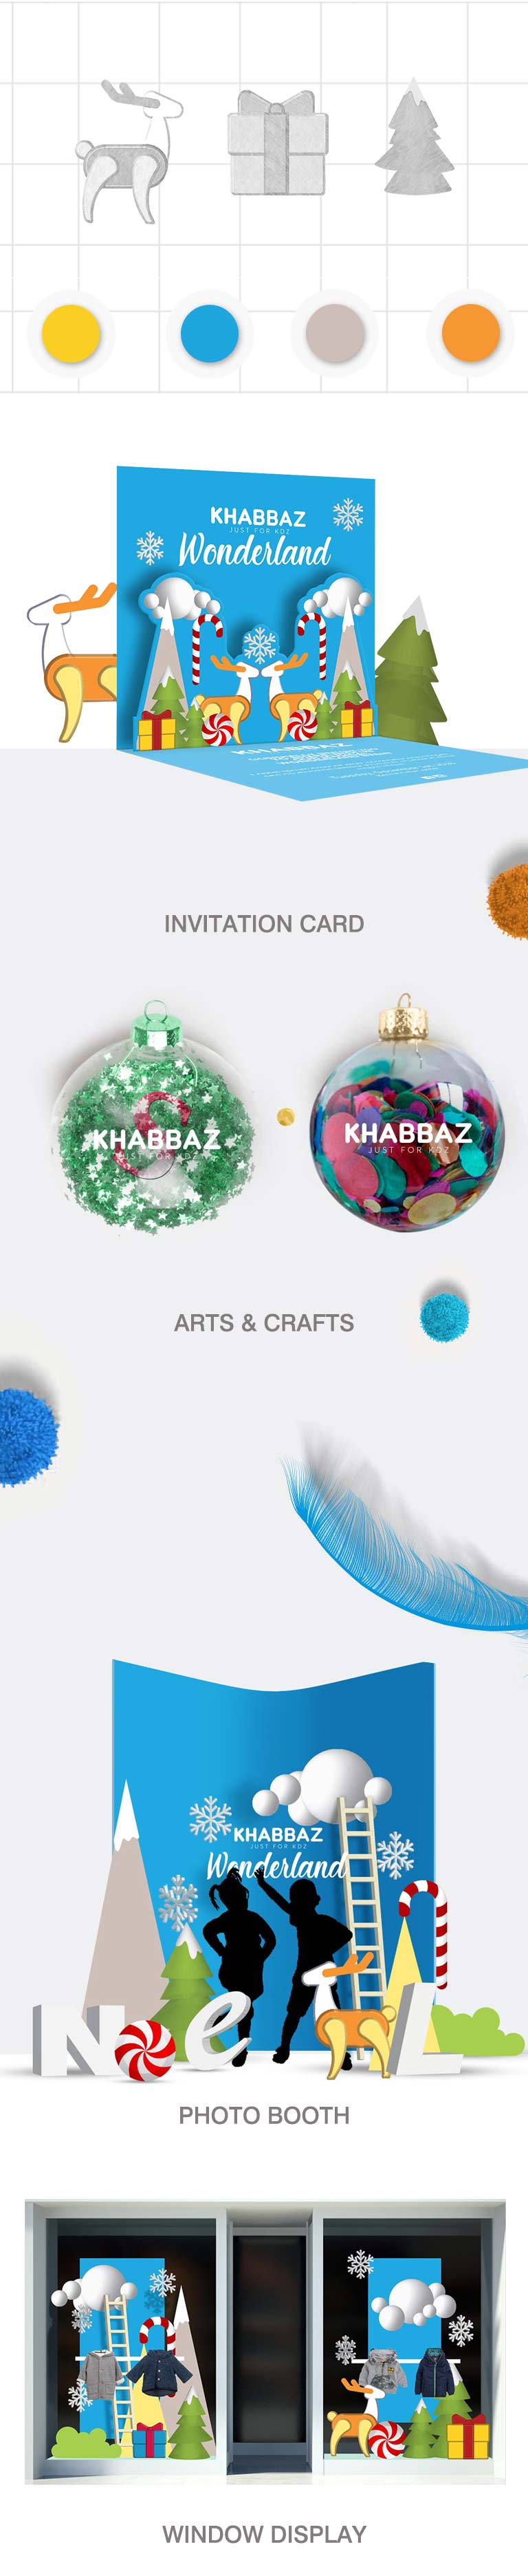 mobile Portfolio of work done for Khabbaz Kids